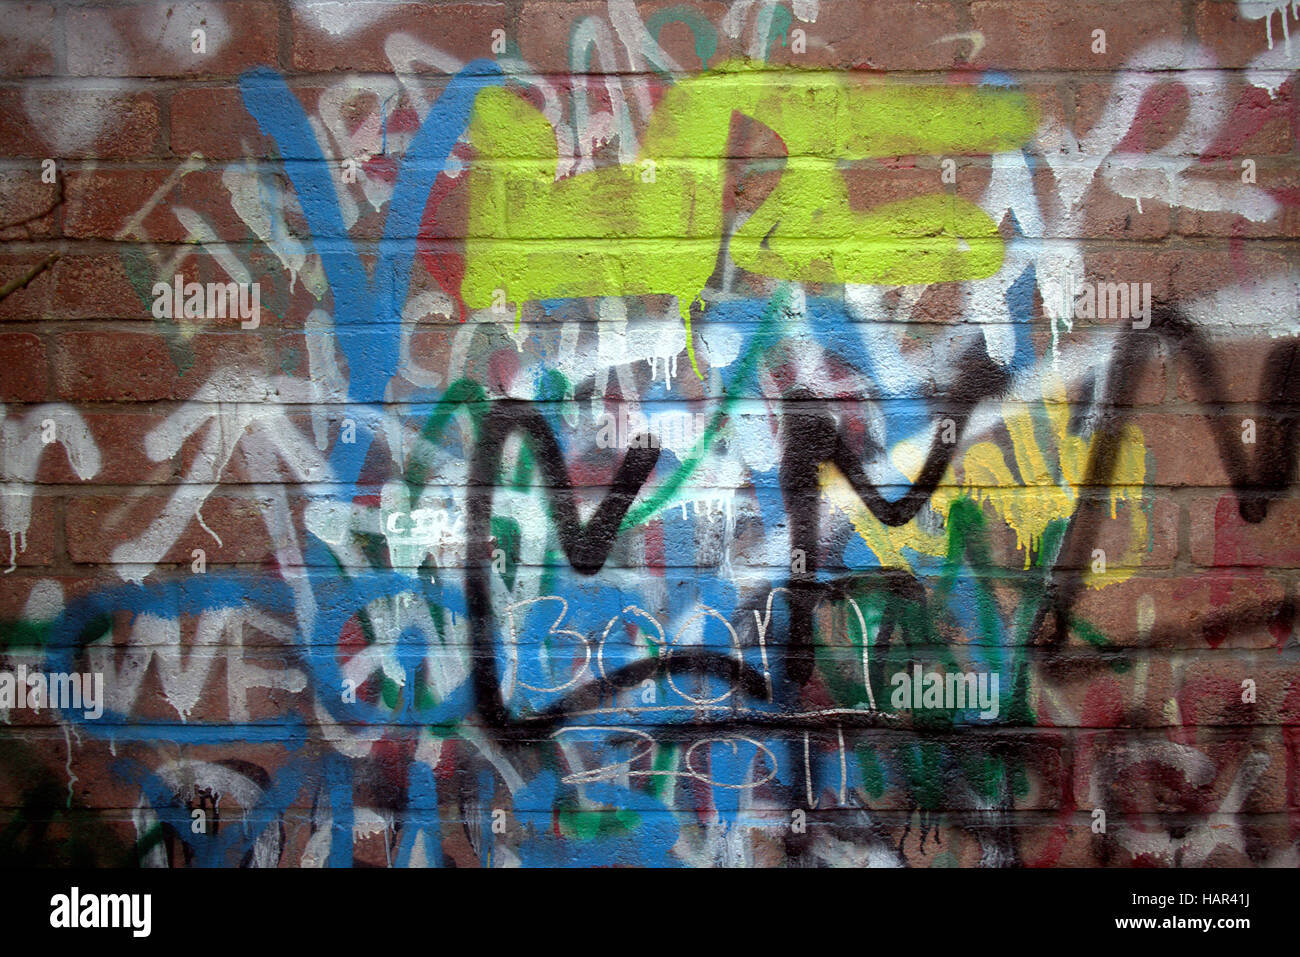 Graffiti sur mur peint à la bombe dans le langage familier anglais Banque D'Images